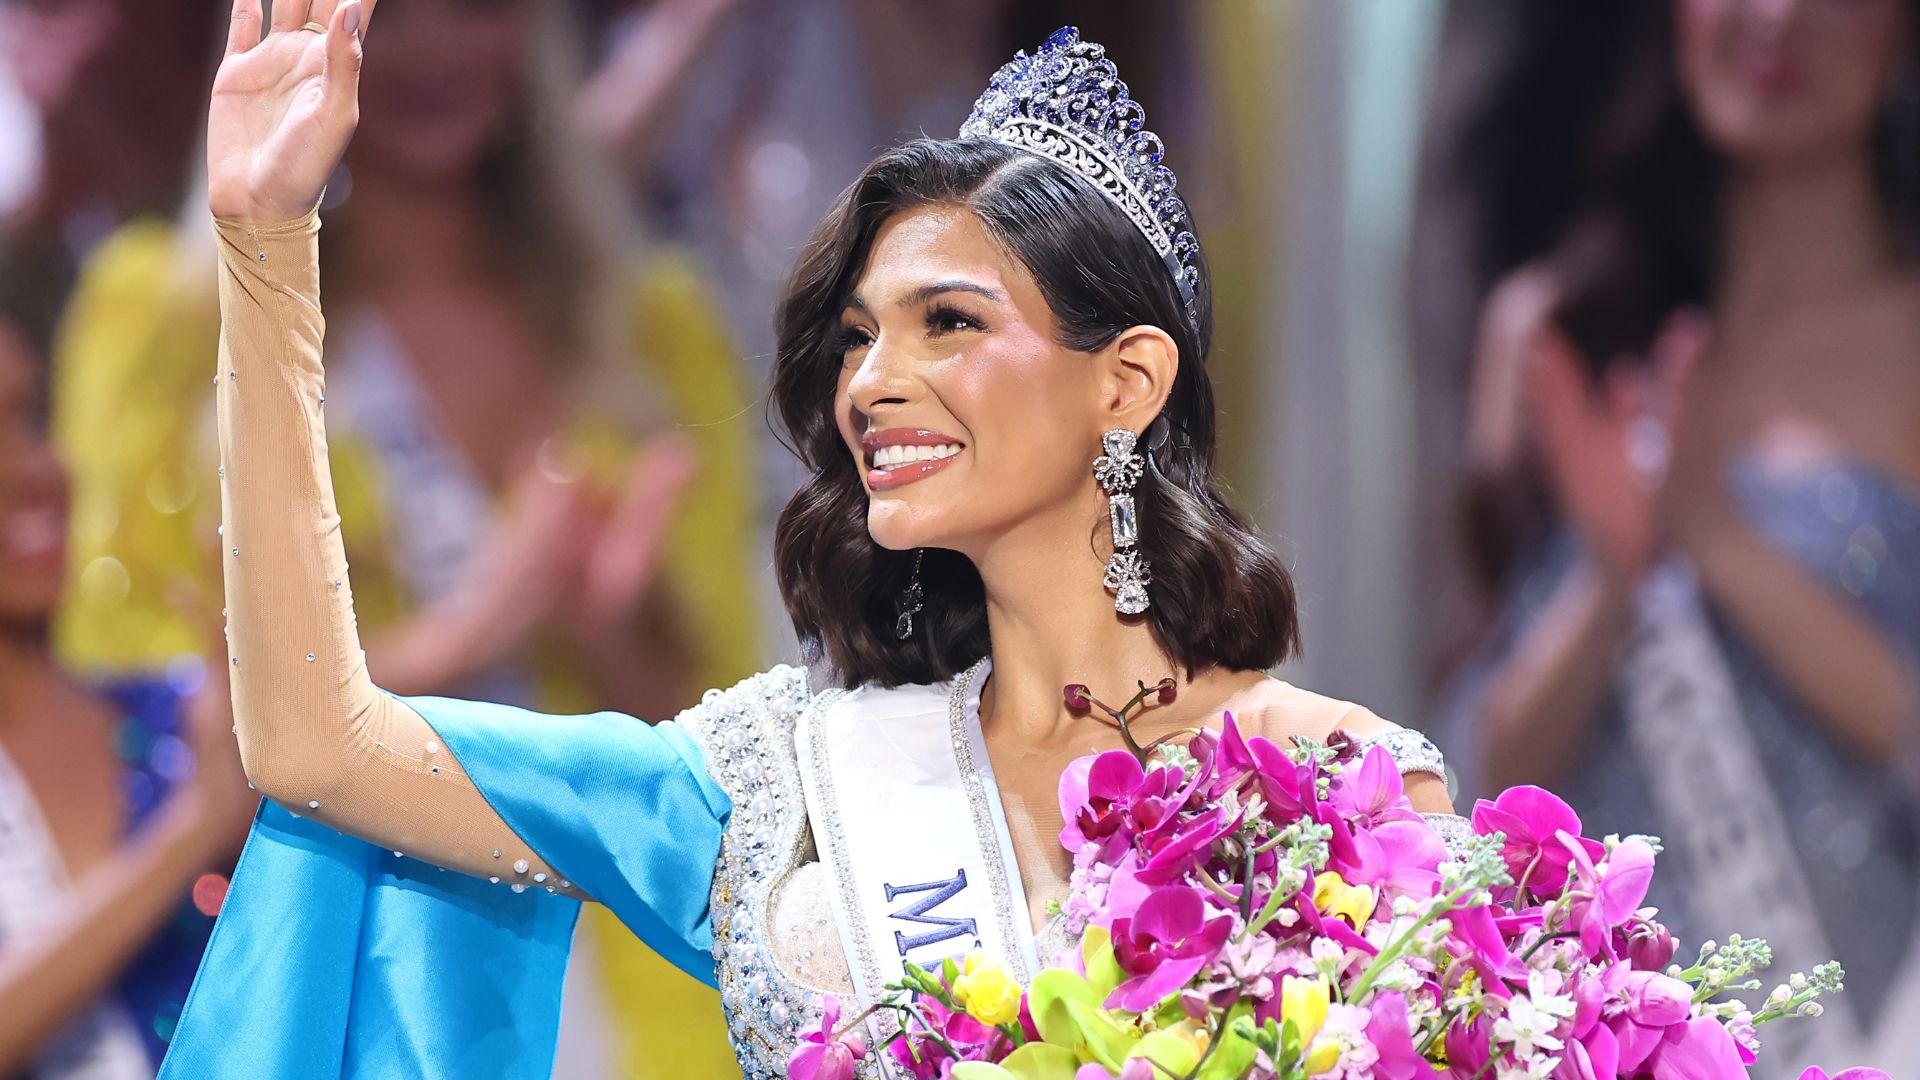 La nicaragüense Sheynnis Palacios fue coronada como la nueva Miss Universo 2023